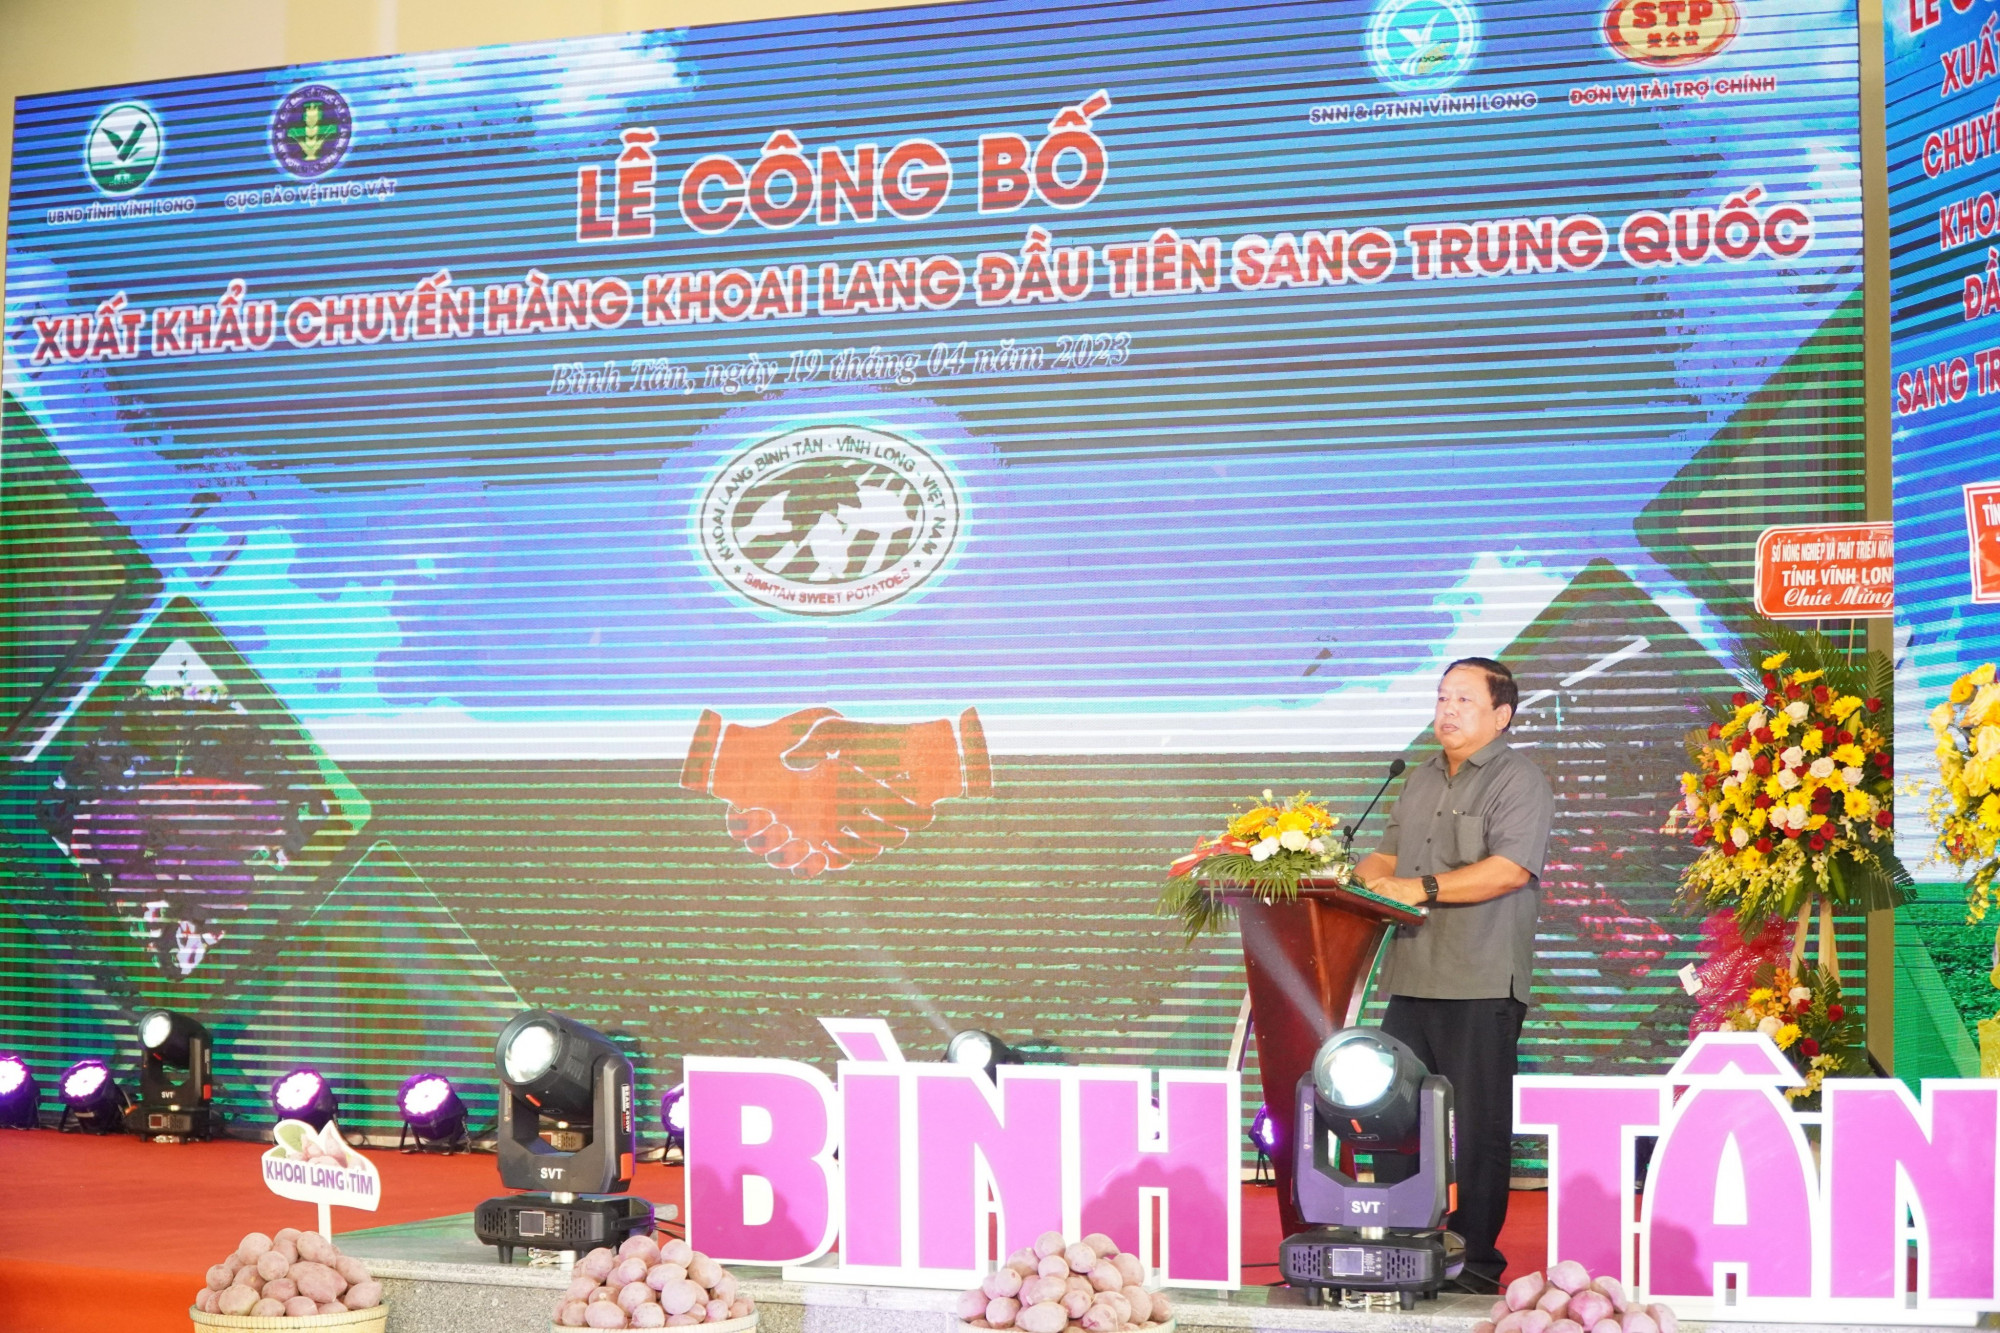 Ông Nguyễn Văn Liệt - Phó chủ tịch UBND tỉnh Vĩnh Long phát biểu